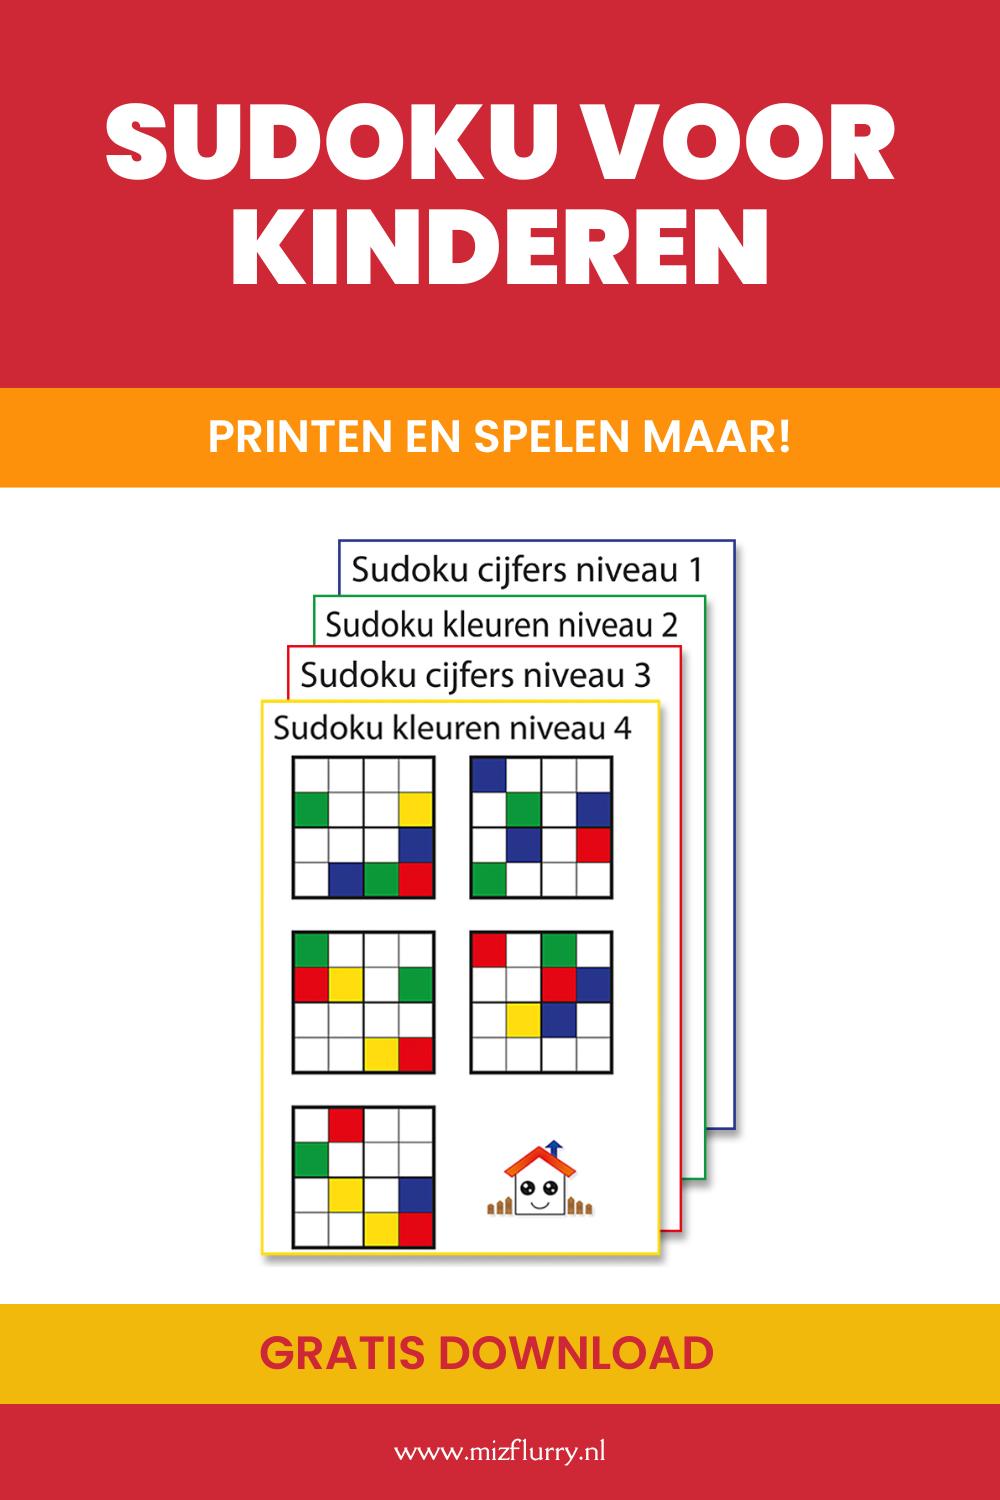 Sudoku voor kind printen. Tekst op afbeelding: Sudoku voor kinderen, printen en spelen maar! Gratis download.